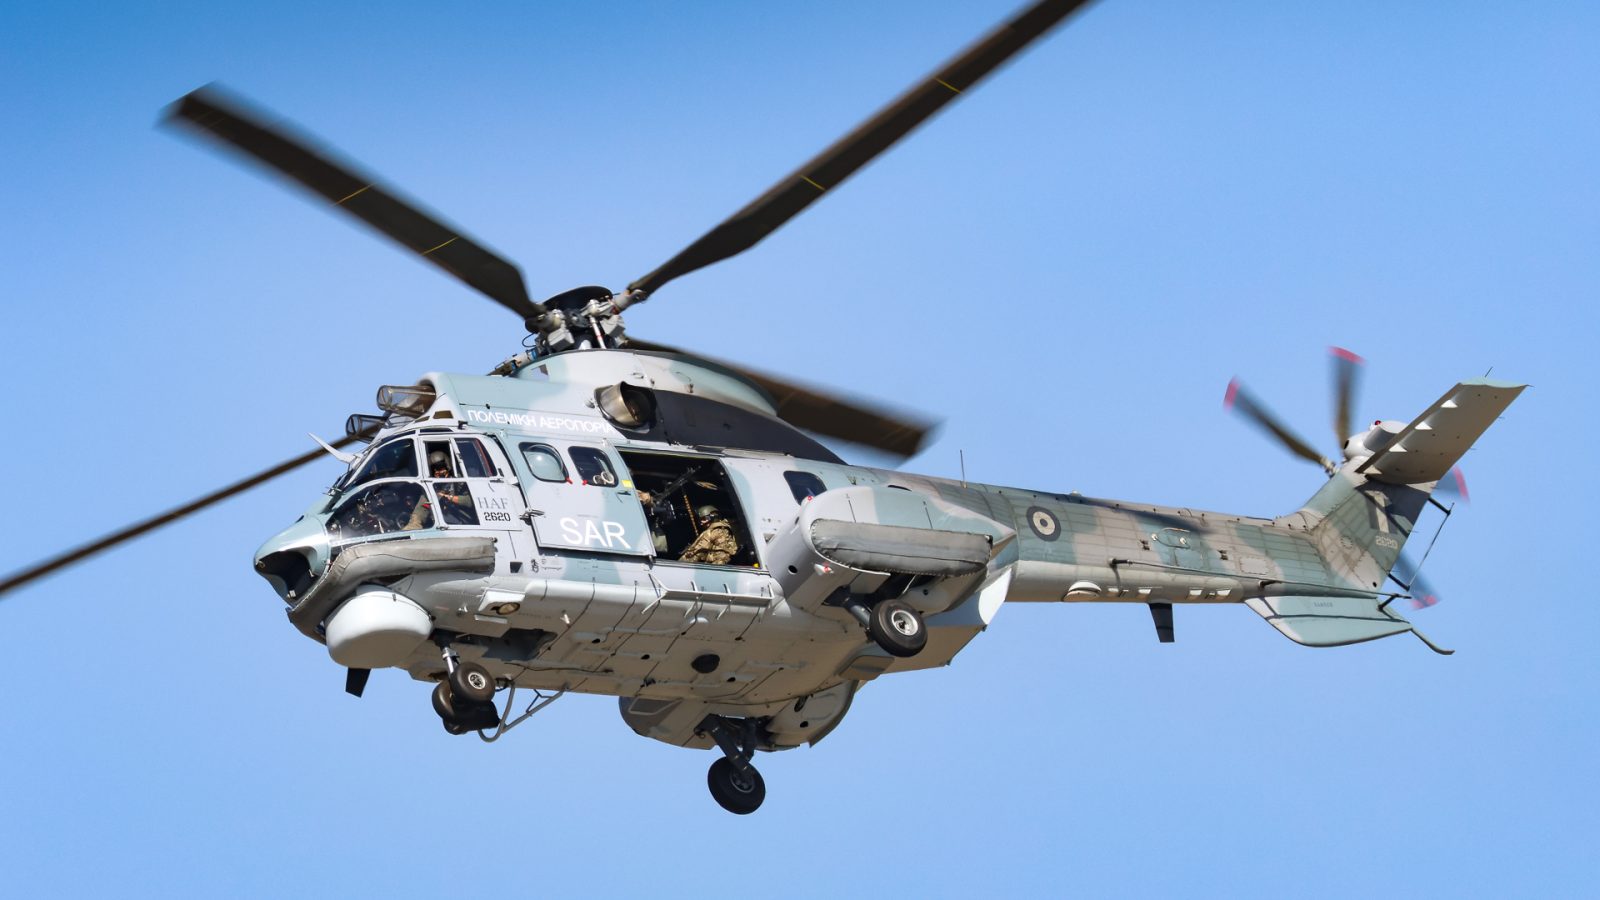 Rumunija nabavlja helikoptere H215M u mornaričkoj varijanti